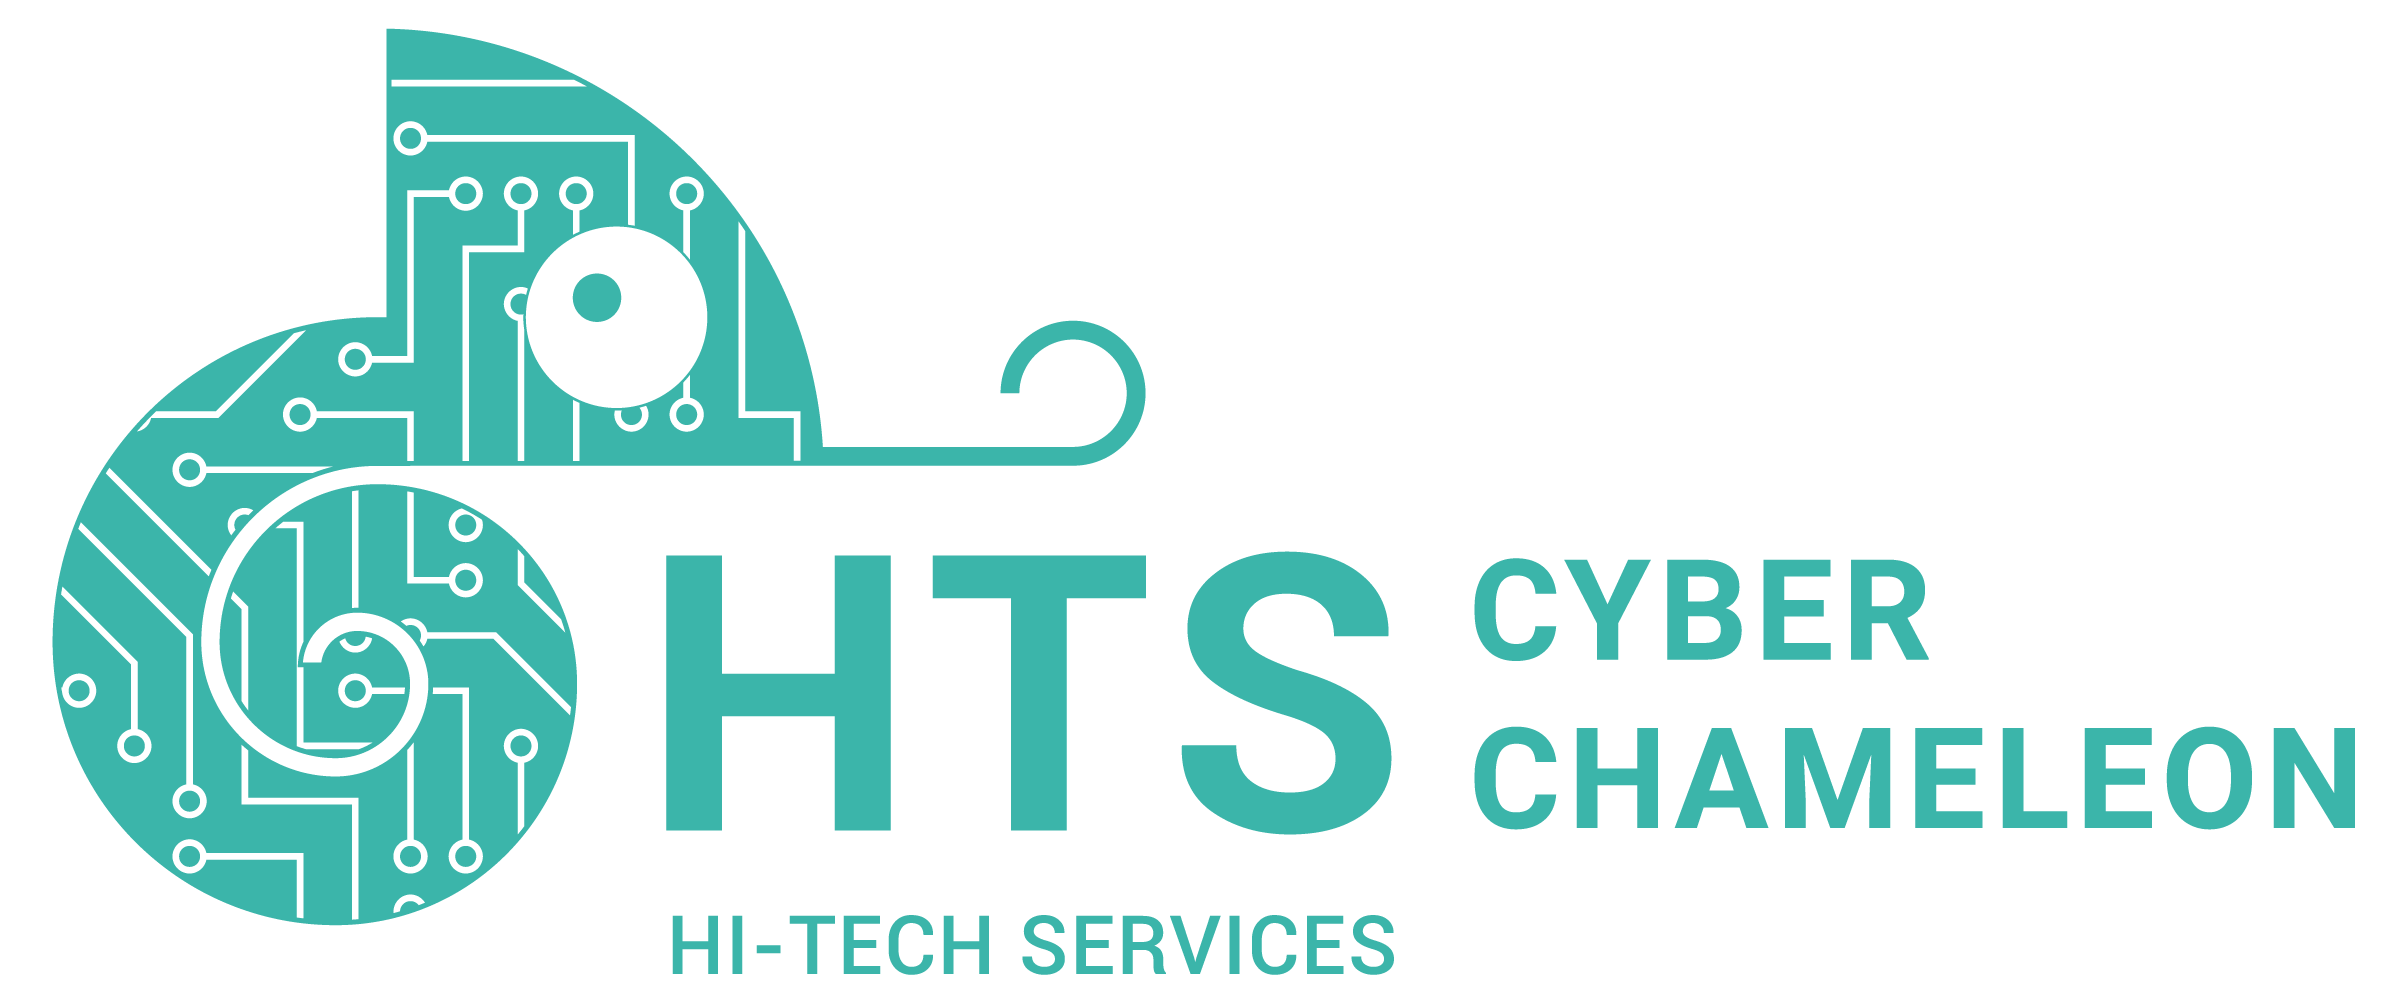 Cyber Chameleon Logo